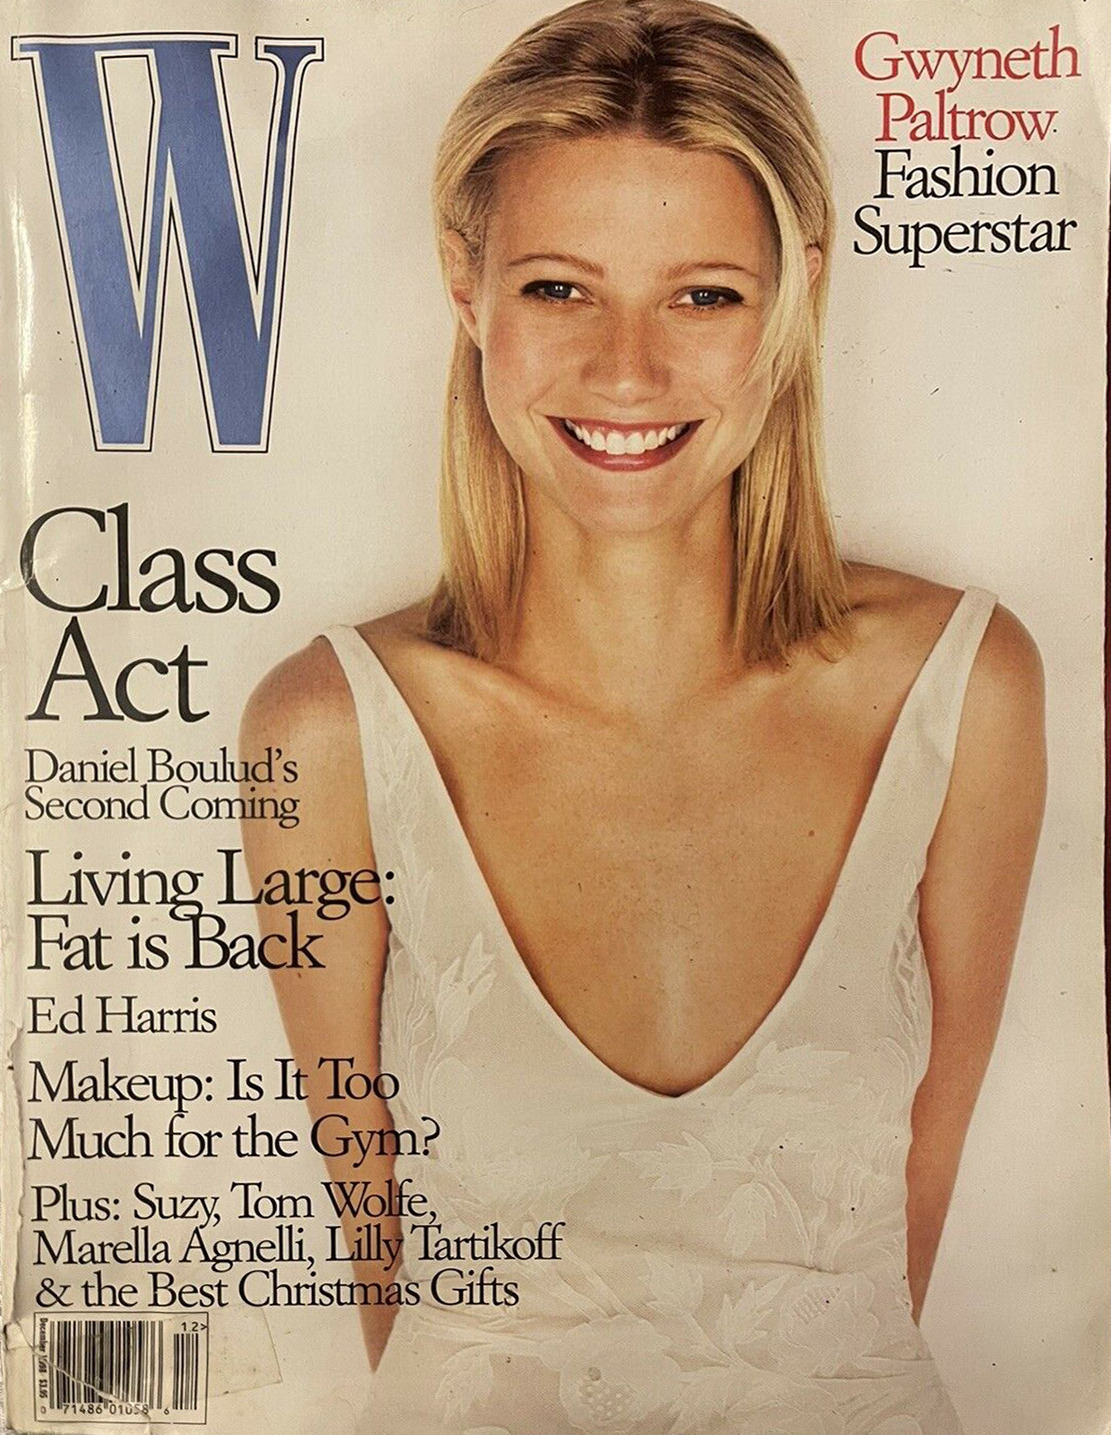 W Dec 1998 magazine reviews